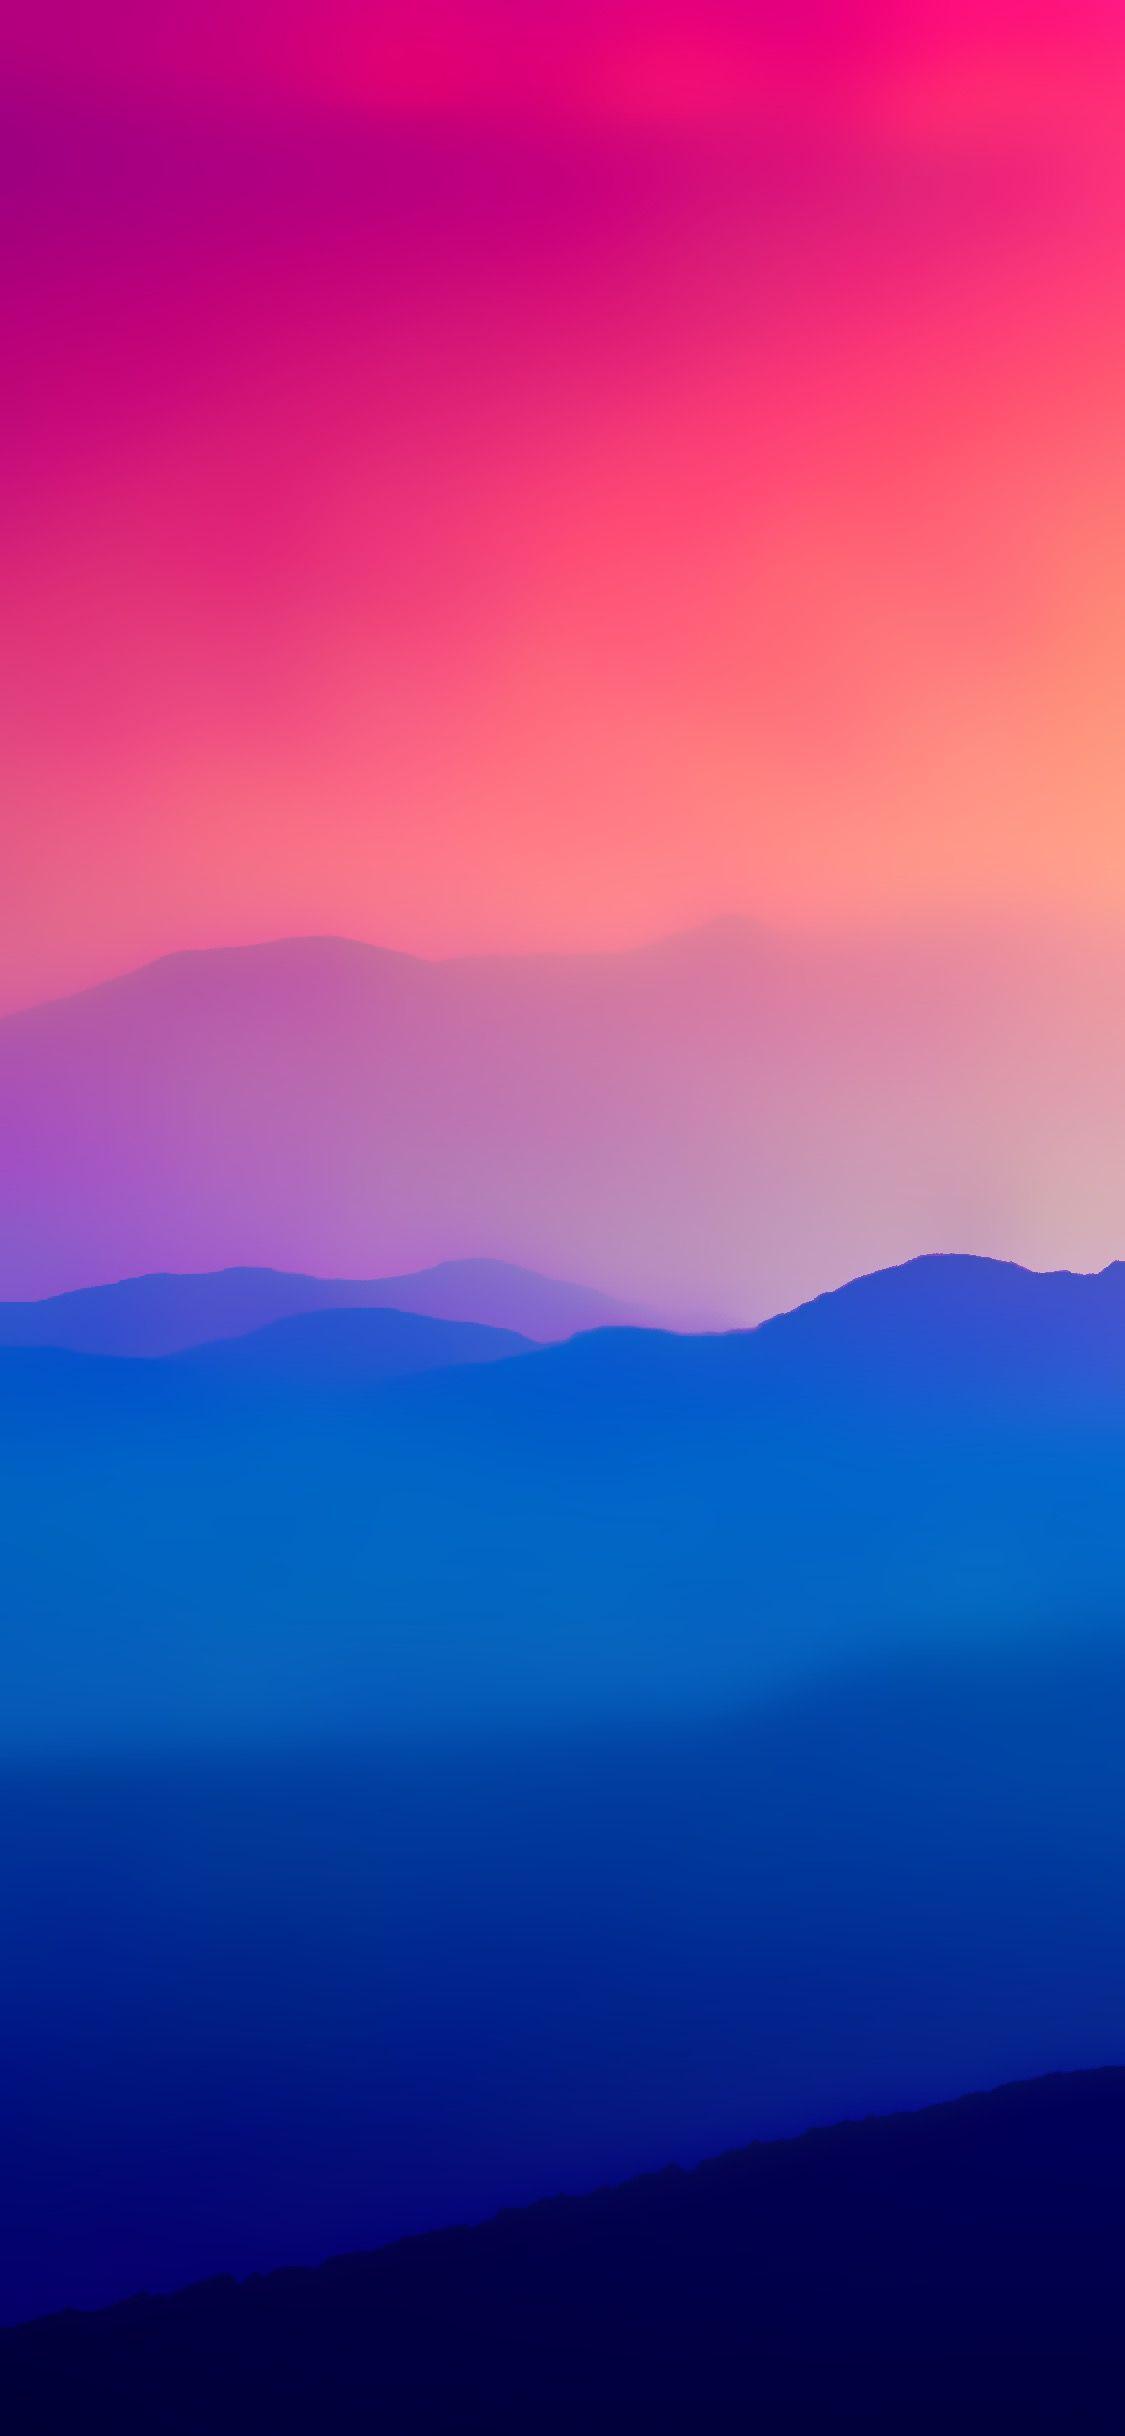 Colorful iPhone Wallpapers - Top Những Hình Ảnh Đẹp